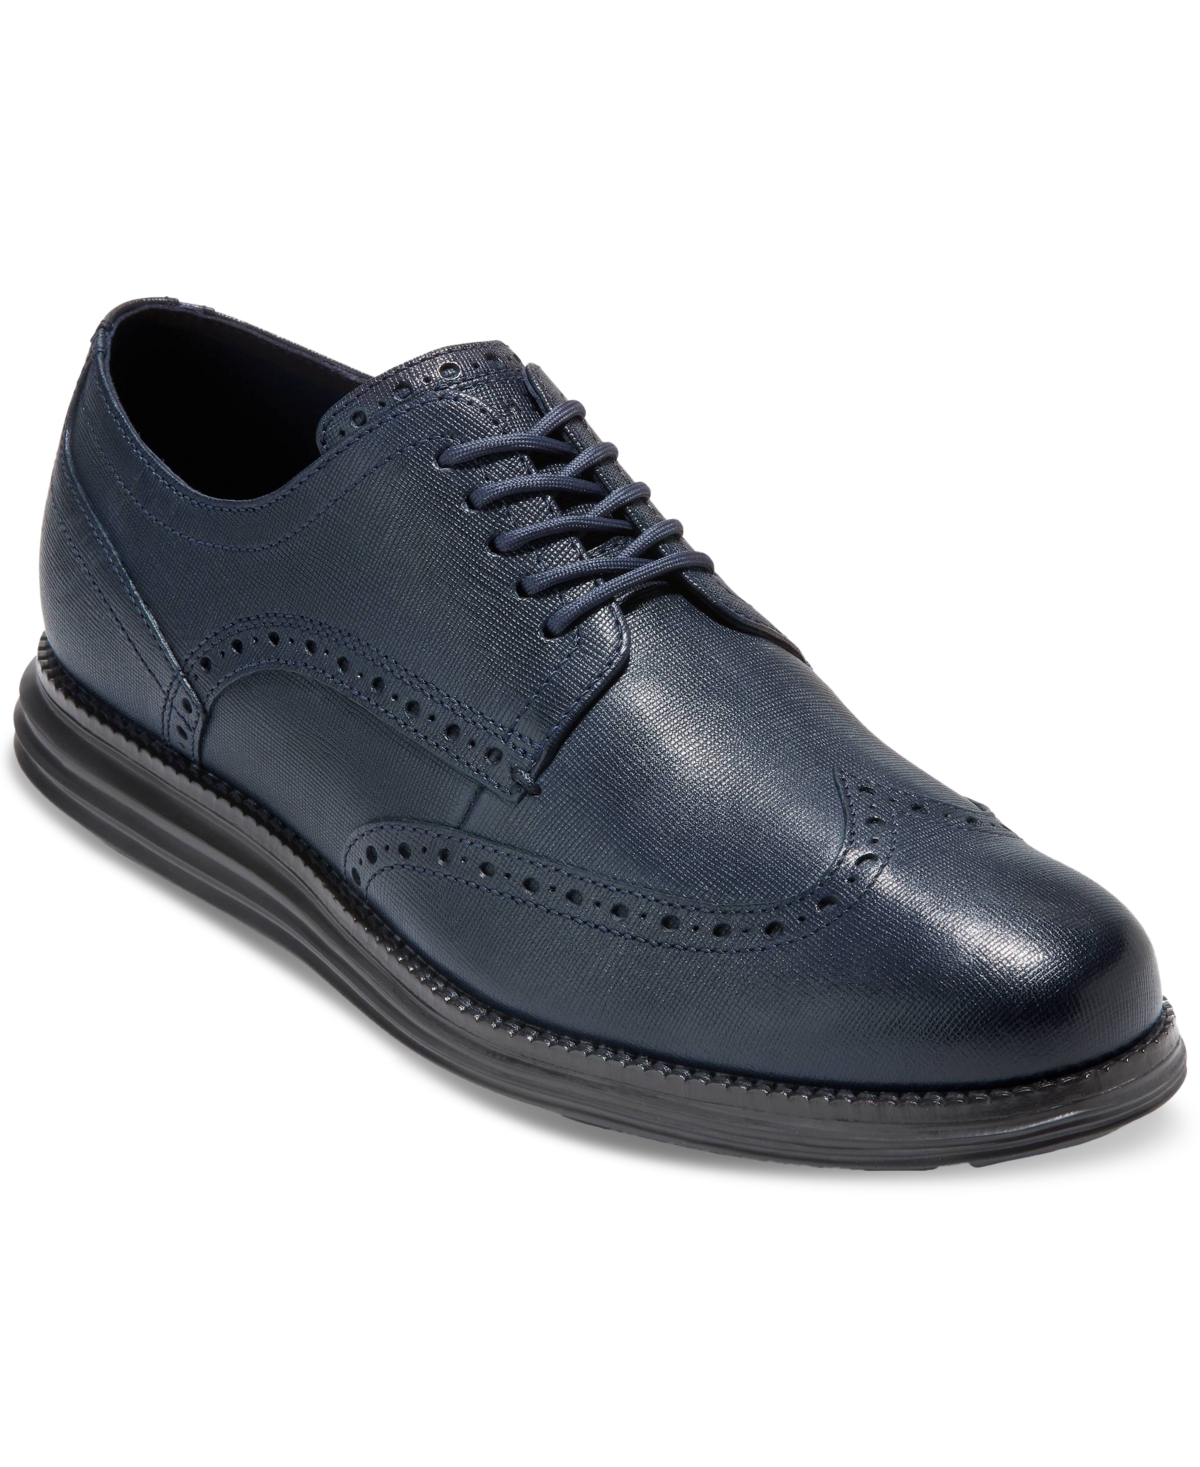 Cole Haan Men's Ãriginalgrand Wingtip Oxford Dress Shoe In Navy Blazer-black